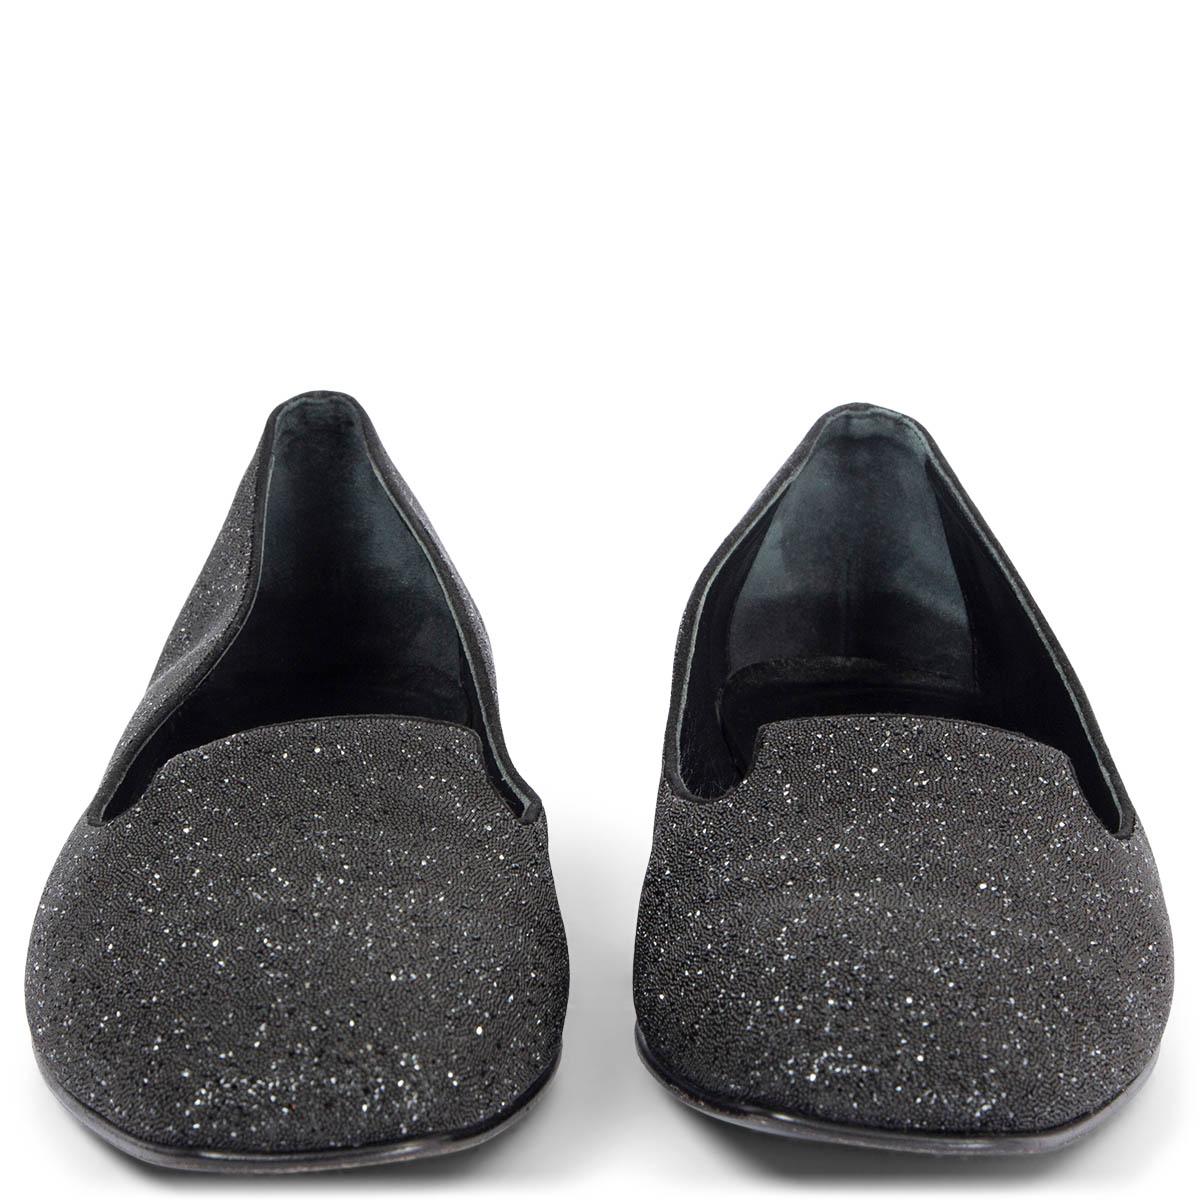 100% authentische Hermès Holly Loafers aus schwarzem, metallisch glitzerndem Kalbsleder mit Wildlederbesatz und gestapeltem Absatz. Sie wurden getragen und sind in ausgezeichnetem Zustand. 

Messungen
Aufgedruckte